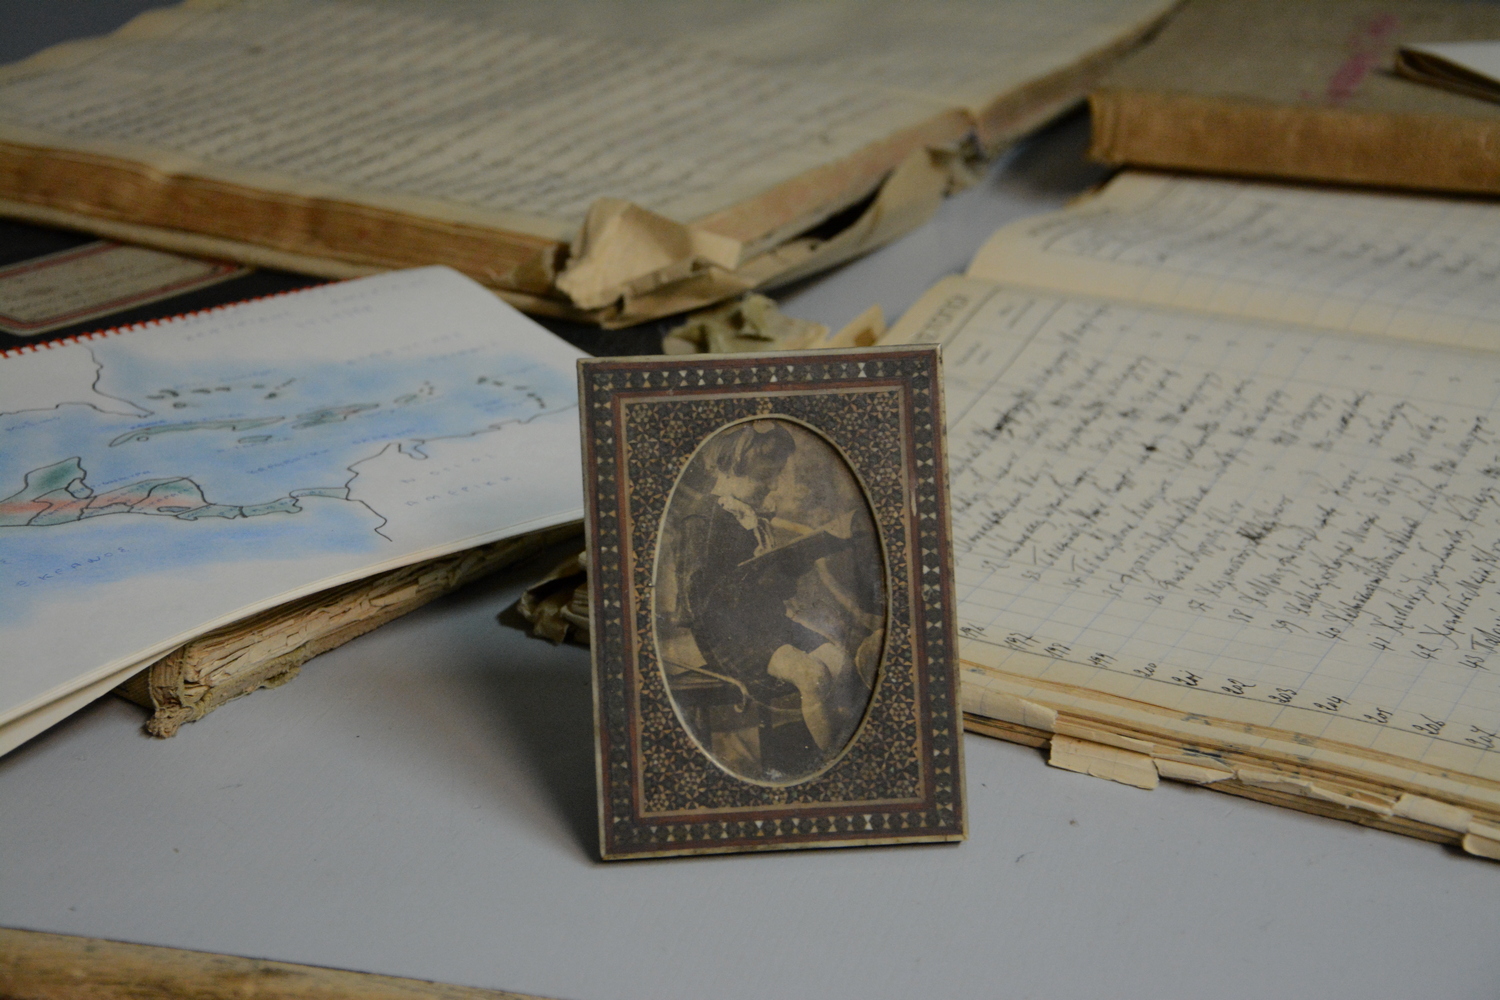 Σχολικά αρχεία του 19ου και 20ού αιώνα «αφηγούνται» την εκπαιδευτική ιστορία της Θεσσαλονίκης